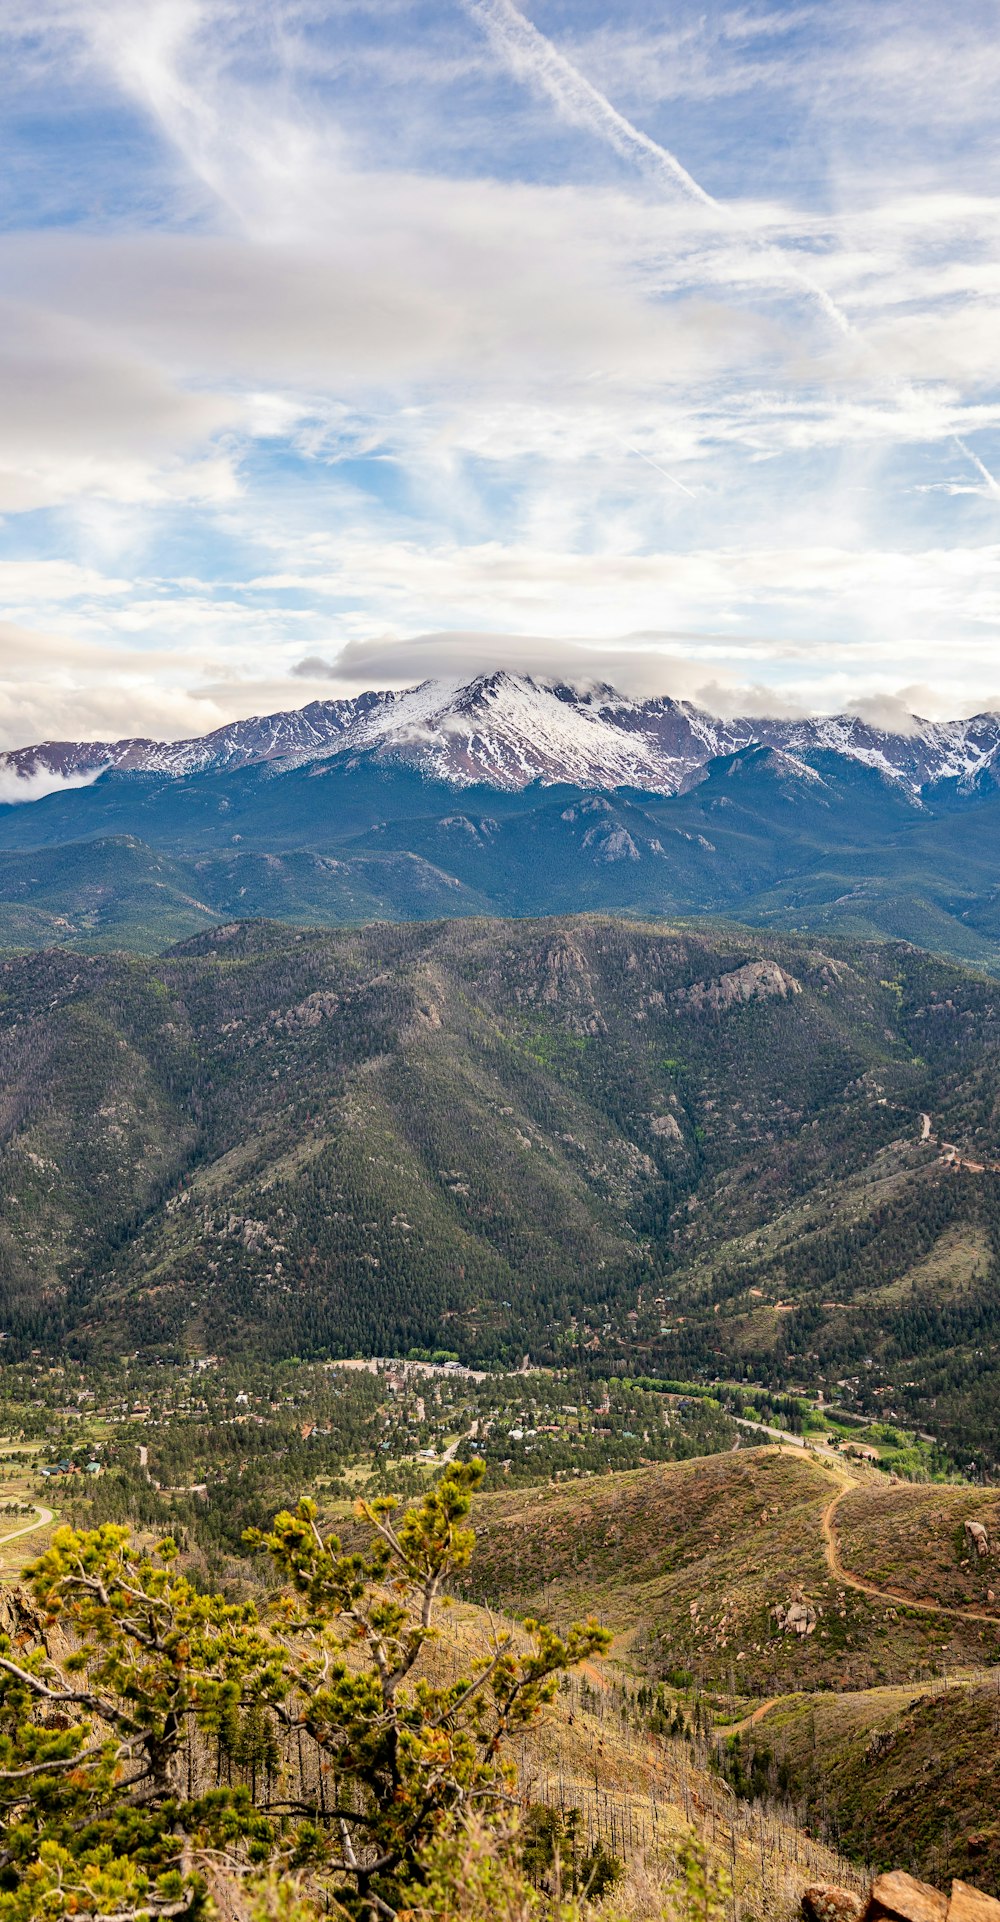 Una vista di una catena montuosa con montagne innevate in lontananza